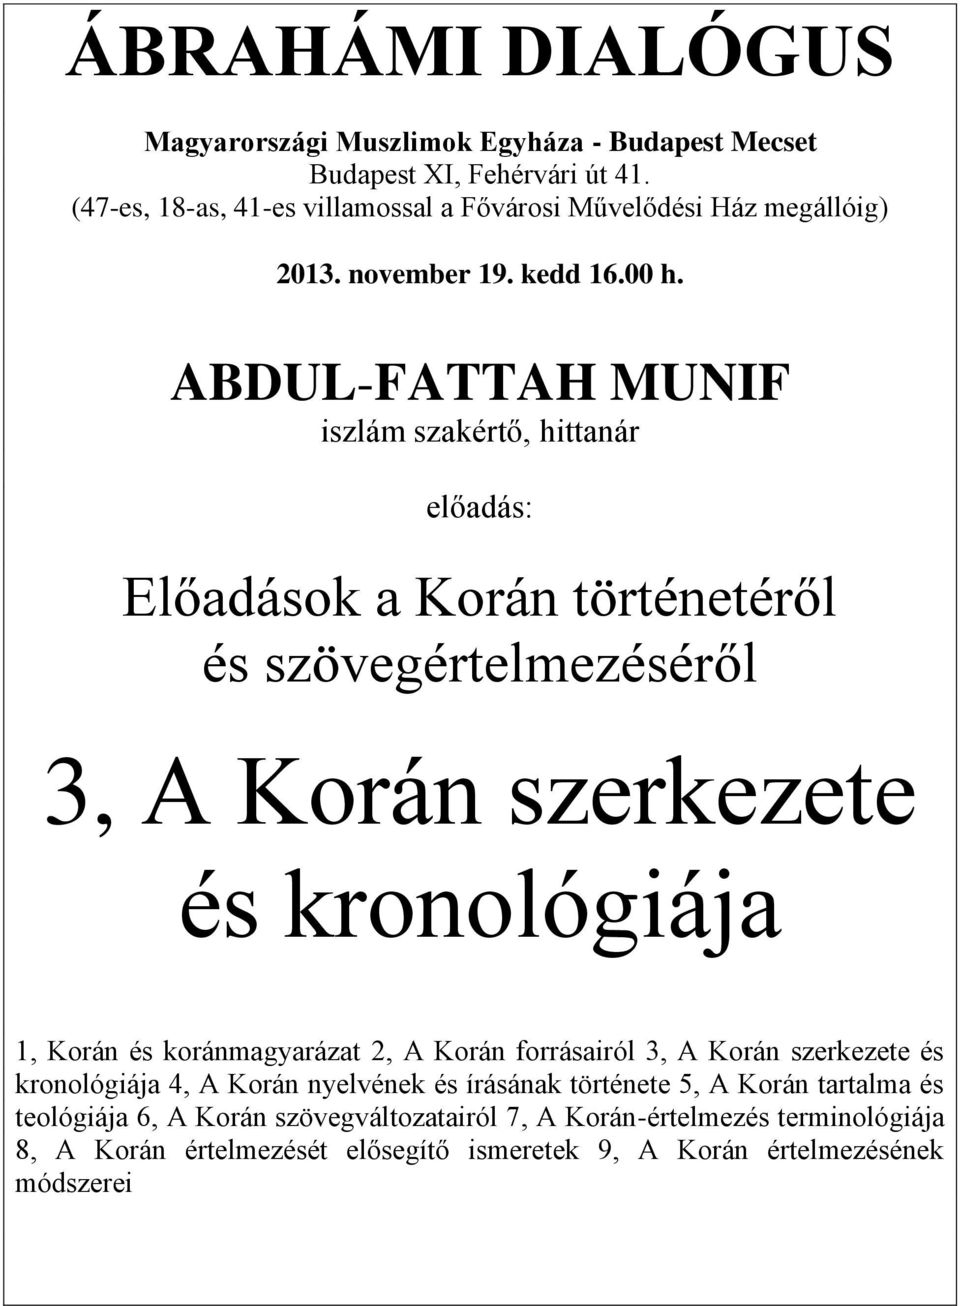 ABDUL-FATTAH MUNIF iszlám szakértő, hittanár előadás: Előadások a Korán történetéről és szövegértelmezéséről 3, A Korán szerkezete és kronológiája 1, Korán és